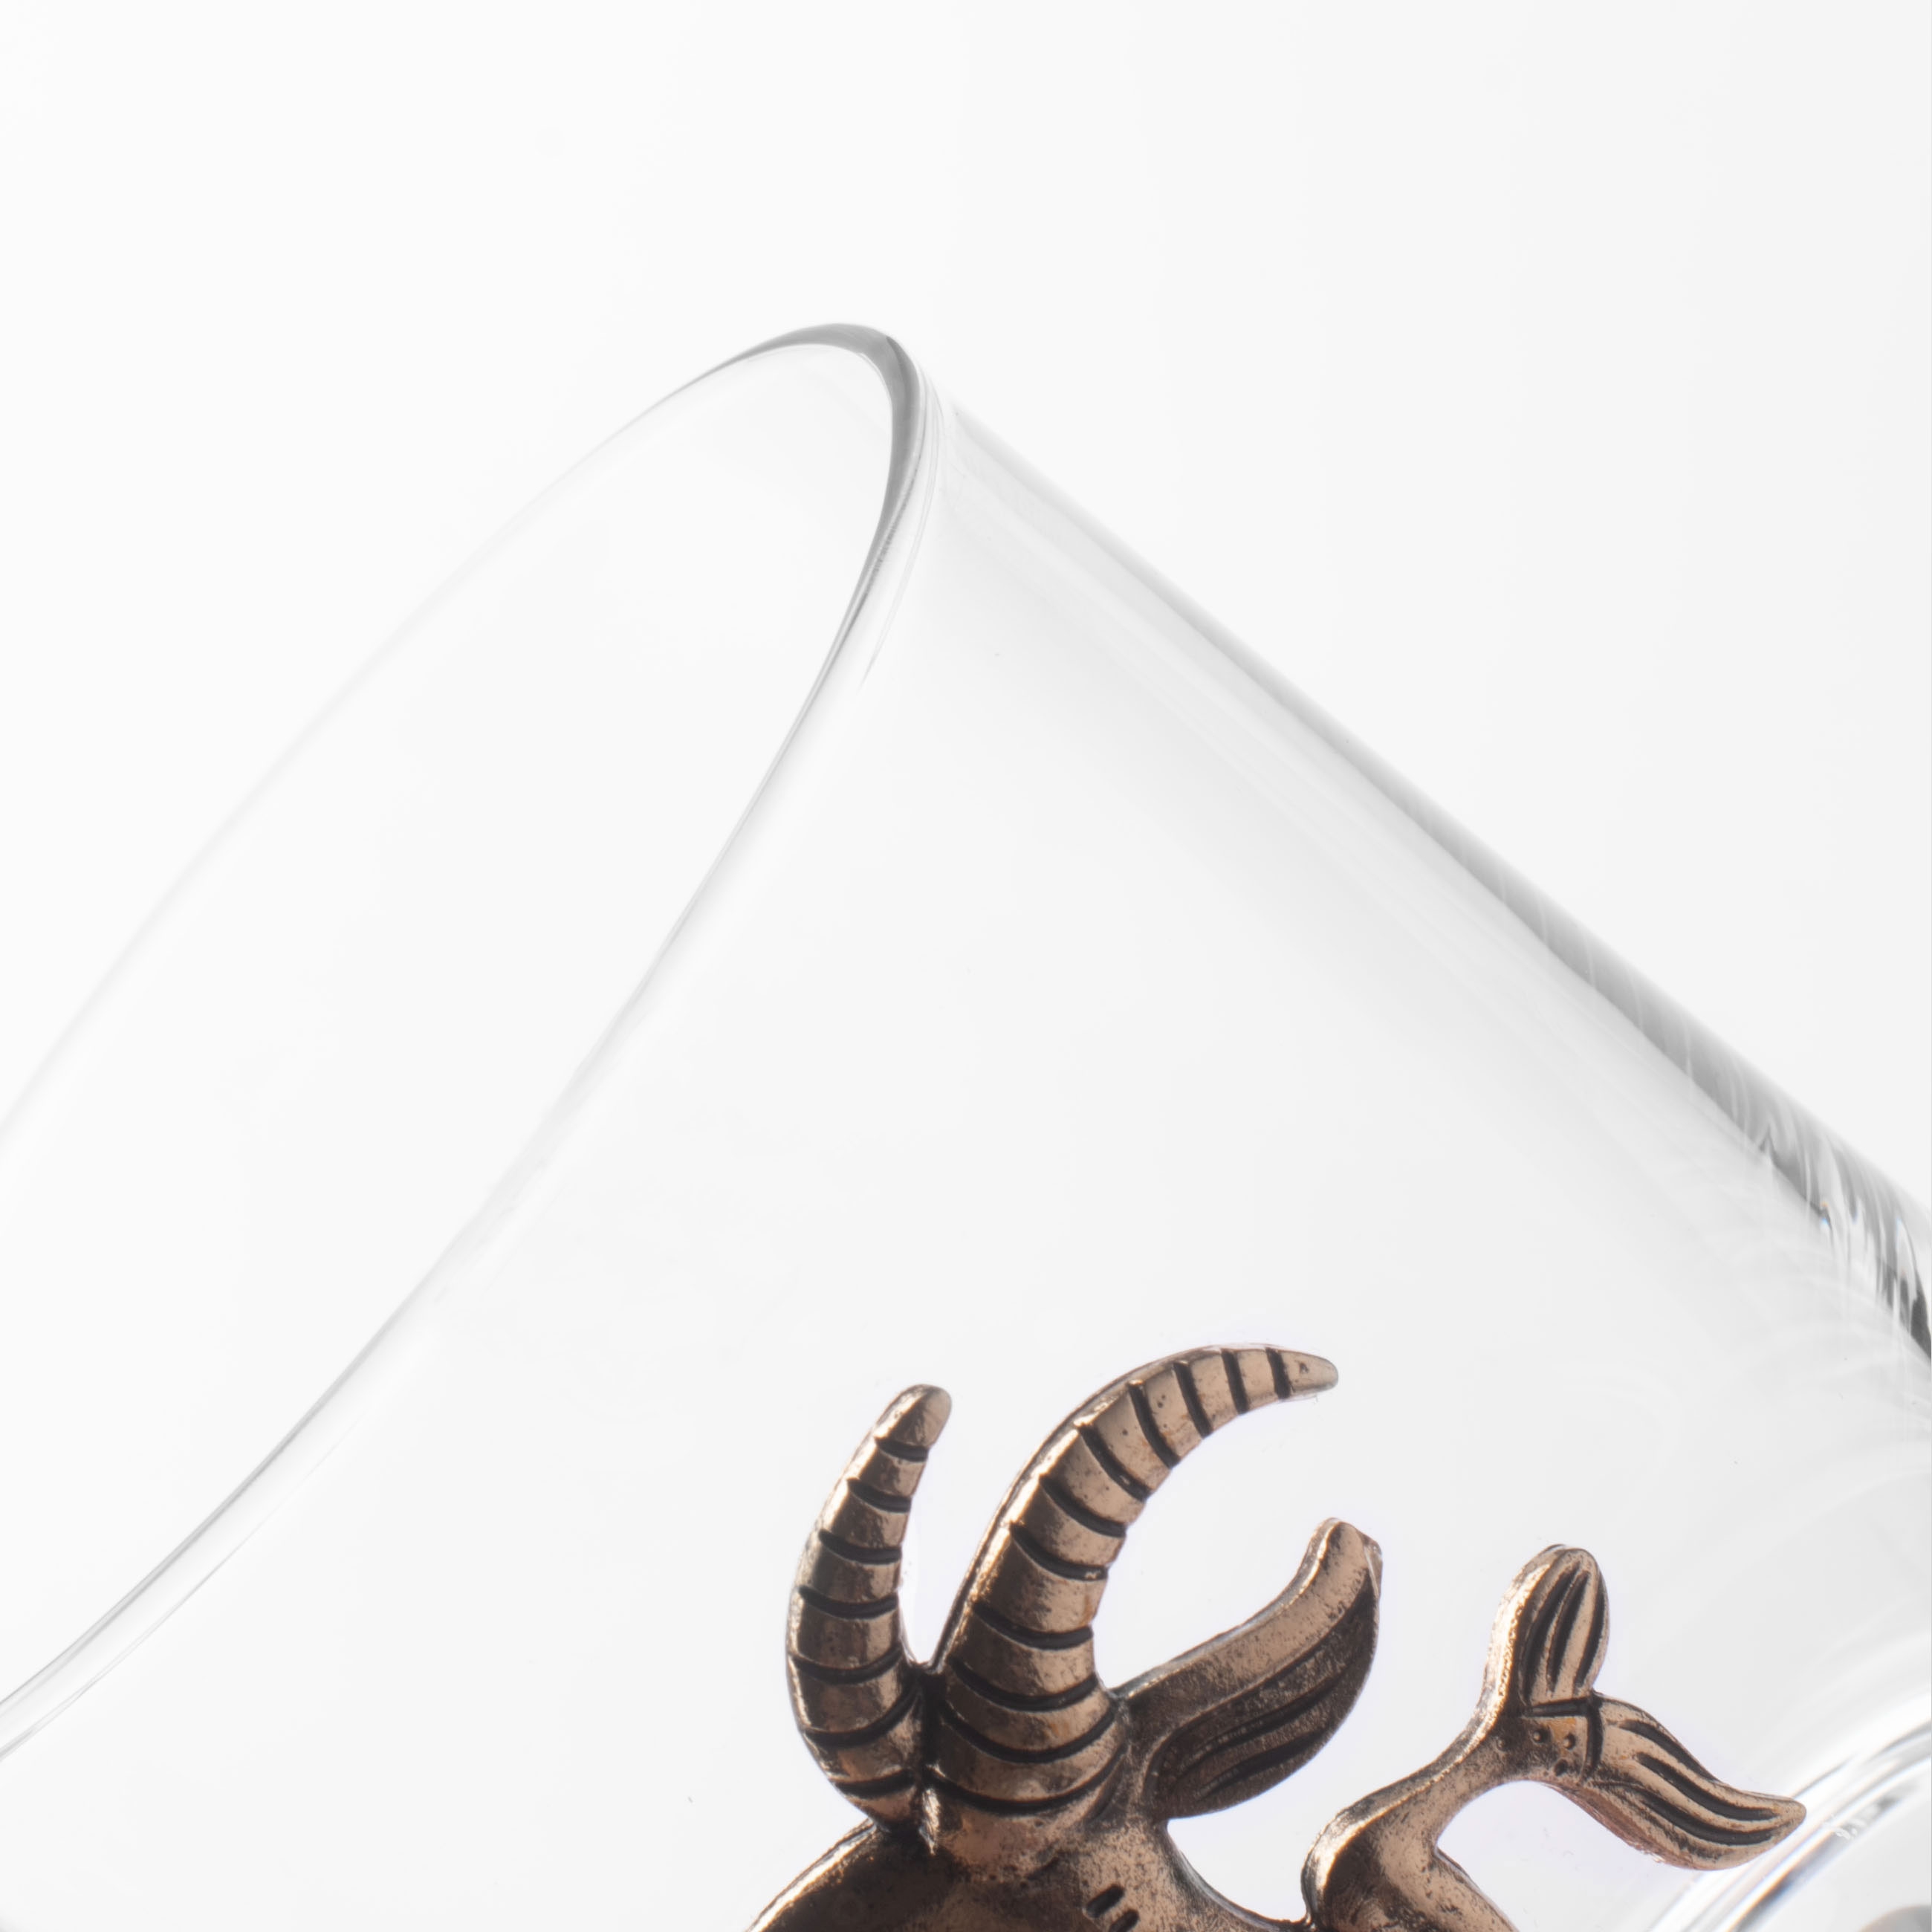 Стакан для виски, 340 мл, стекло/металл, золотистый, Козерог, Zodiac изображение № 5